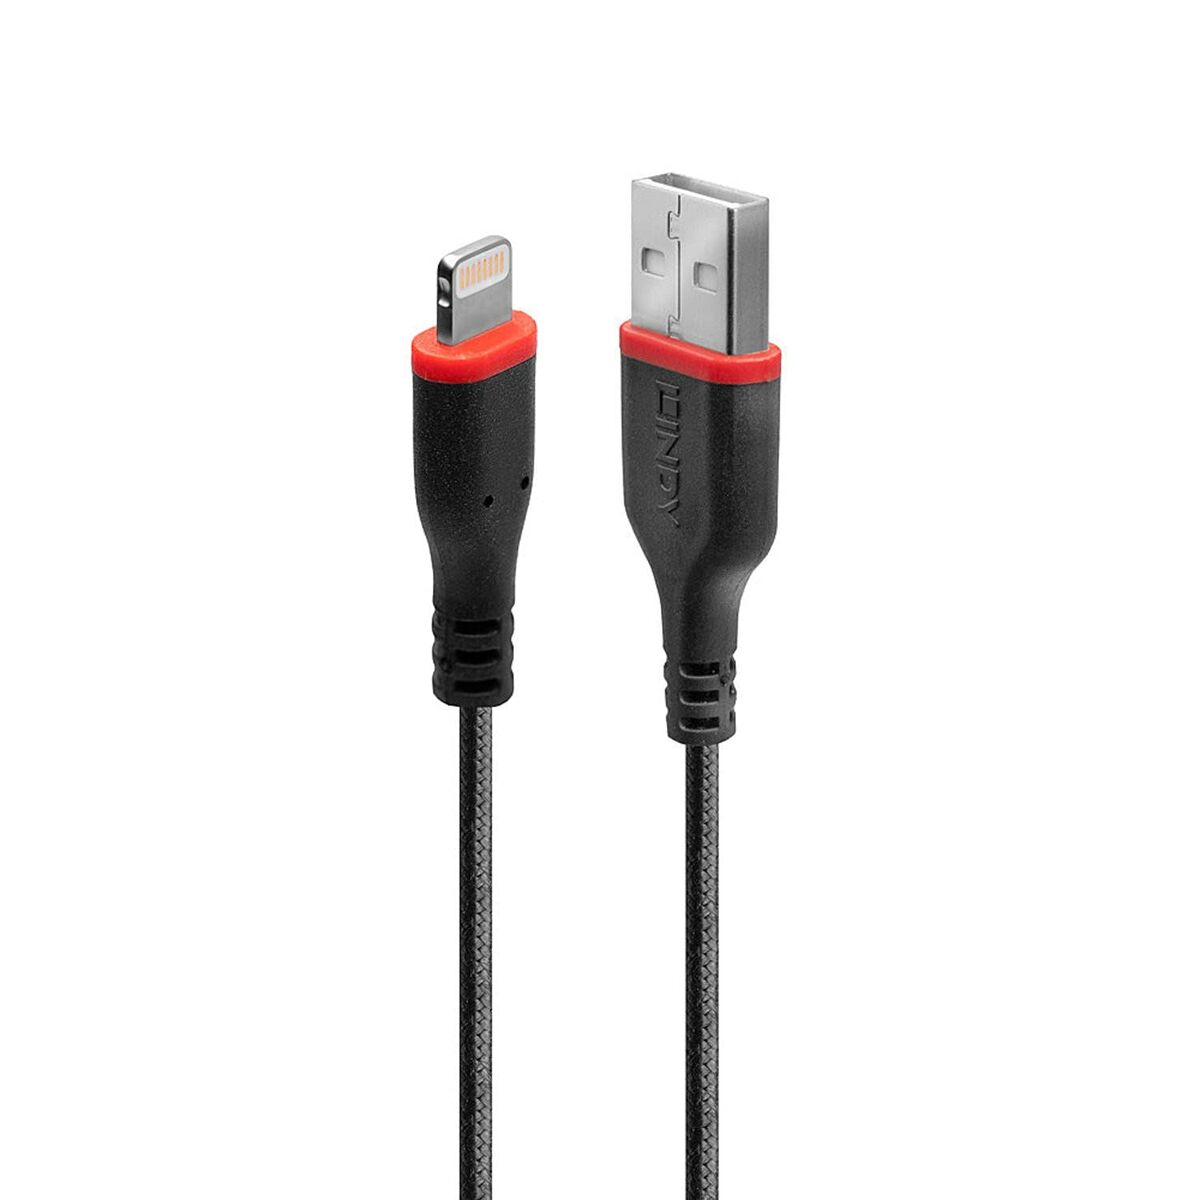 Kabel USB LINDY 31292